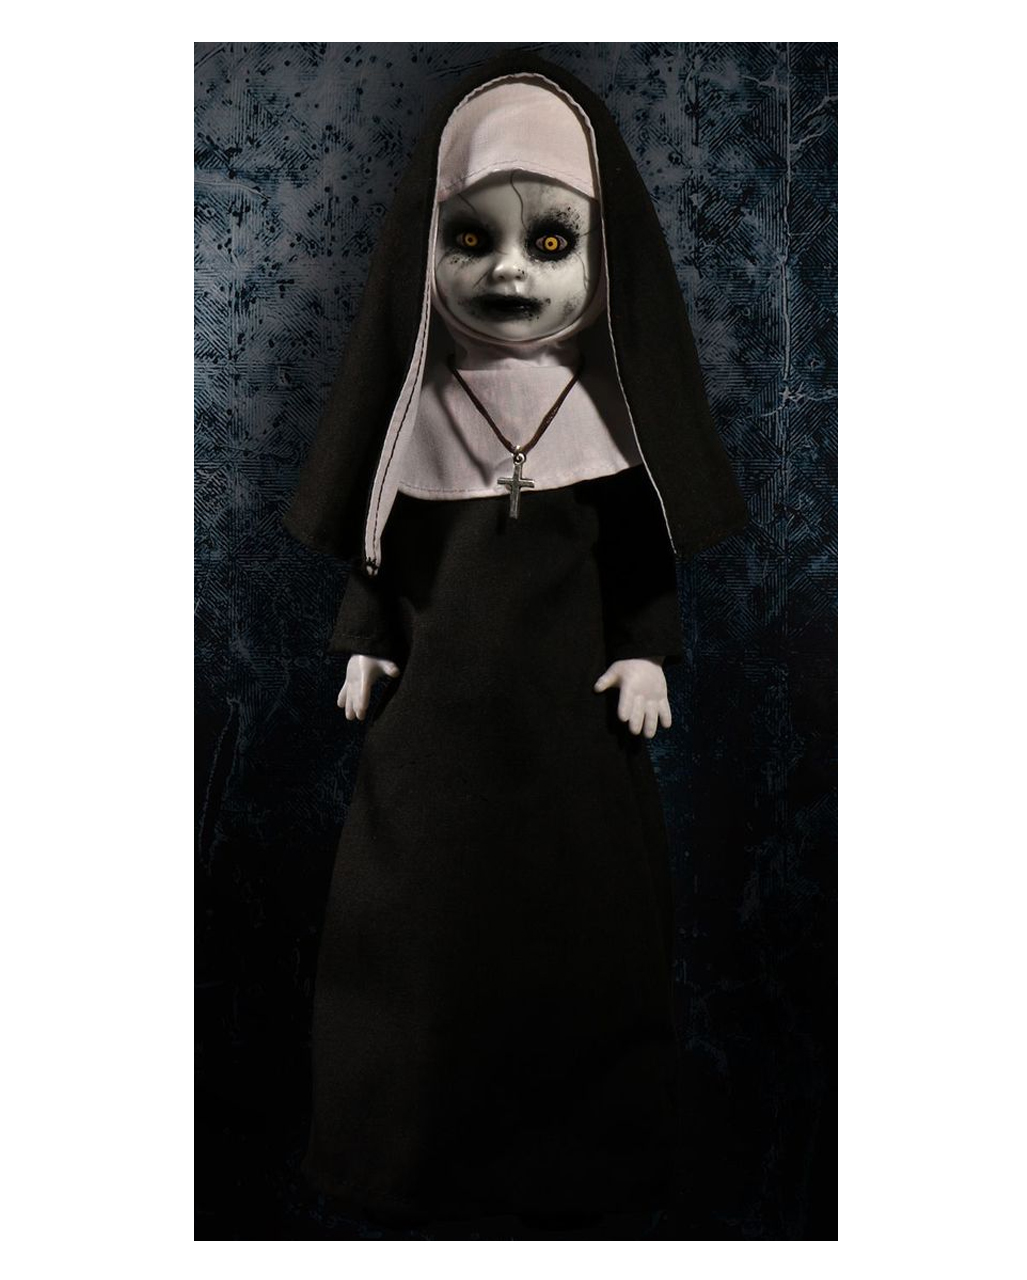 the nun doll horror